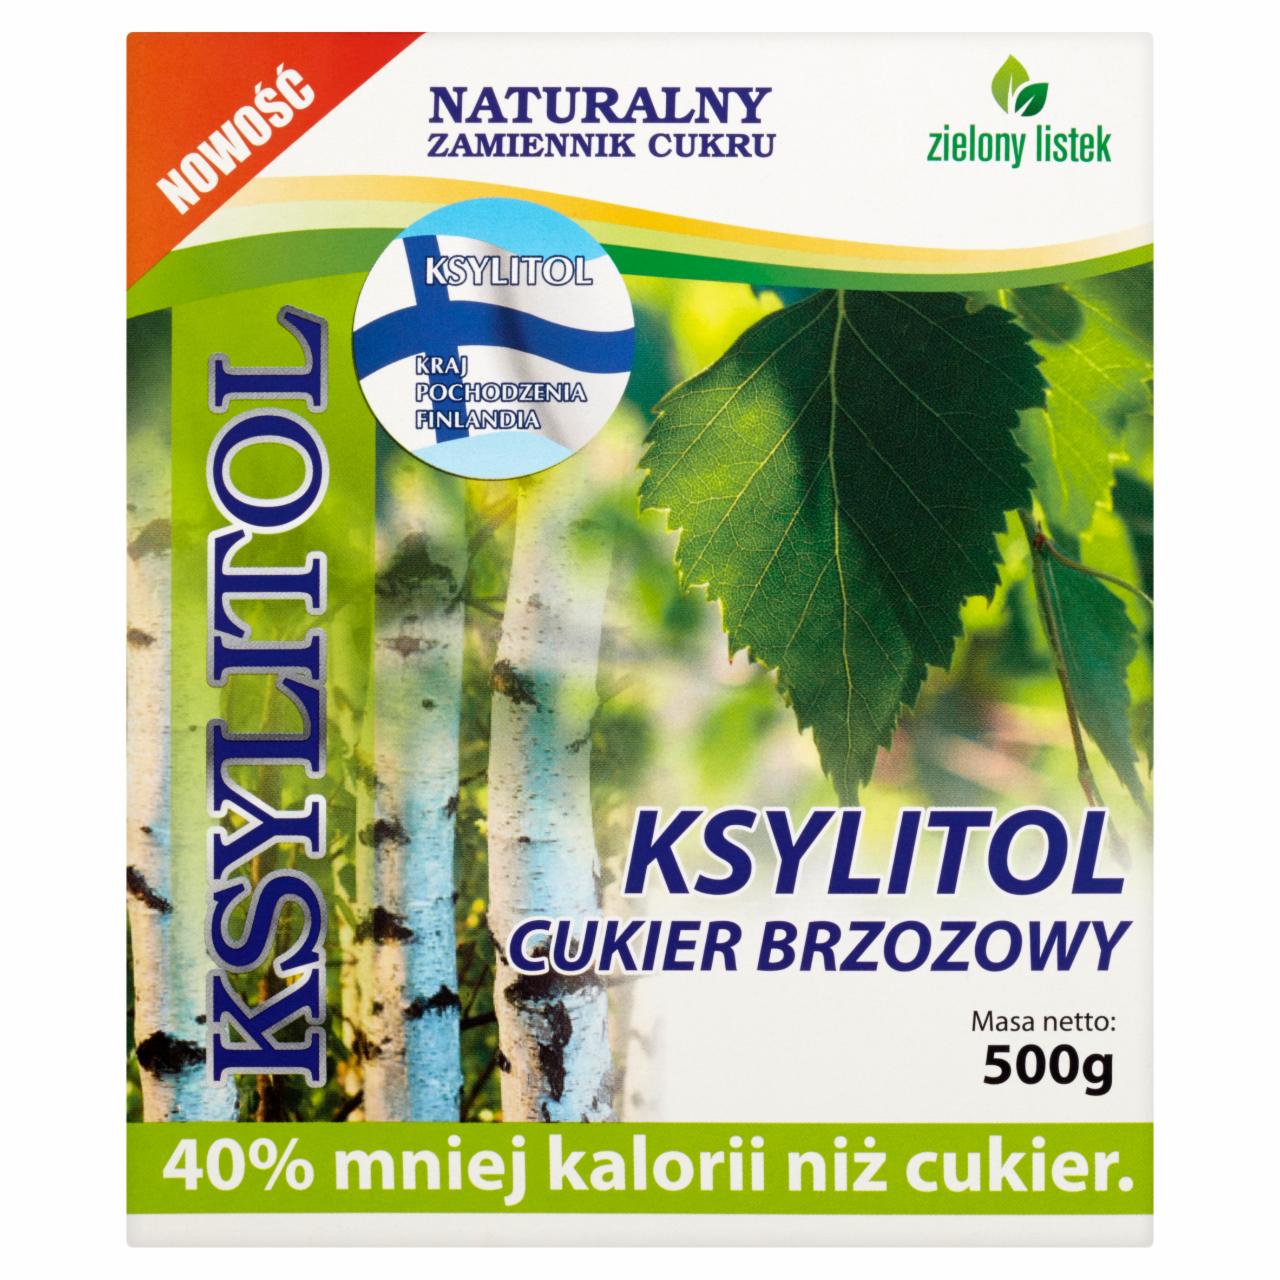 Zdjęcia - Zielony listek Ksylitol cukier brzozowy 500 g